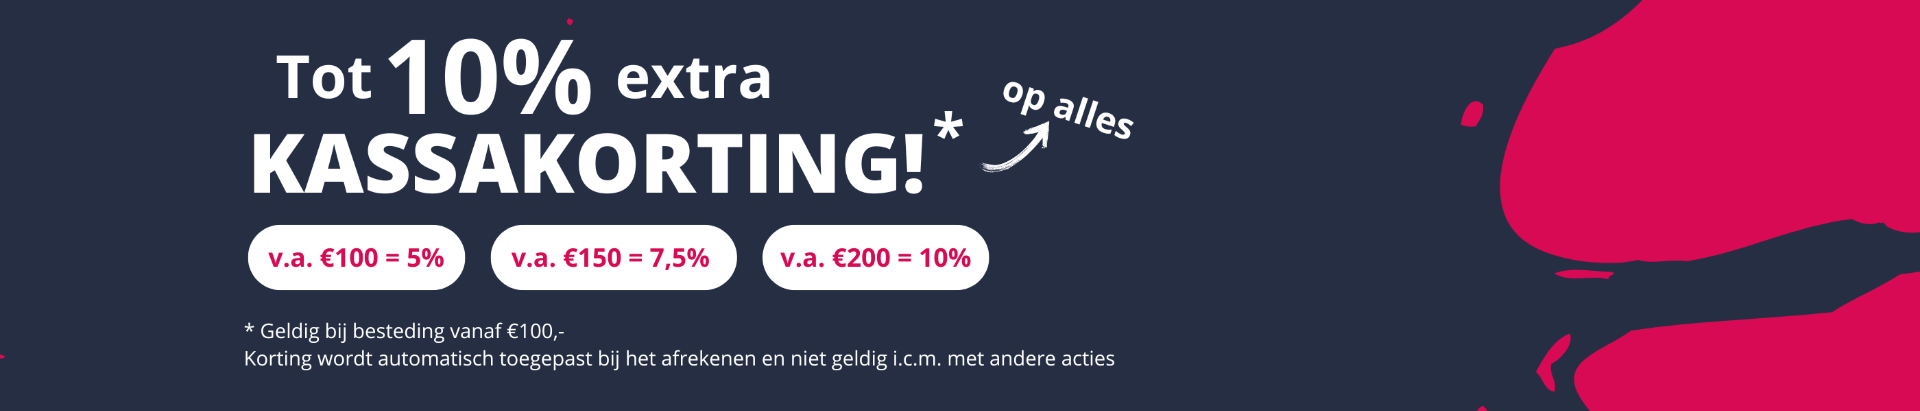 Tot 10% extra kassakorting op alles bij Verfwinkel.nl